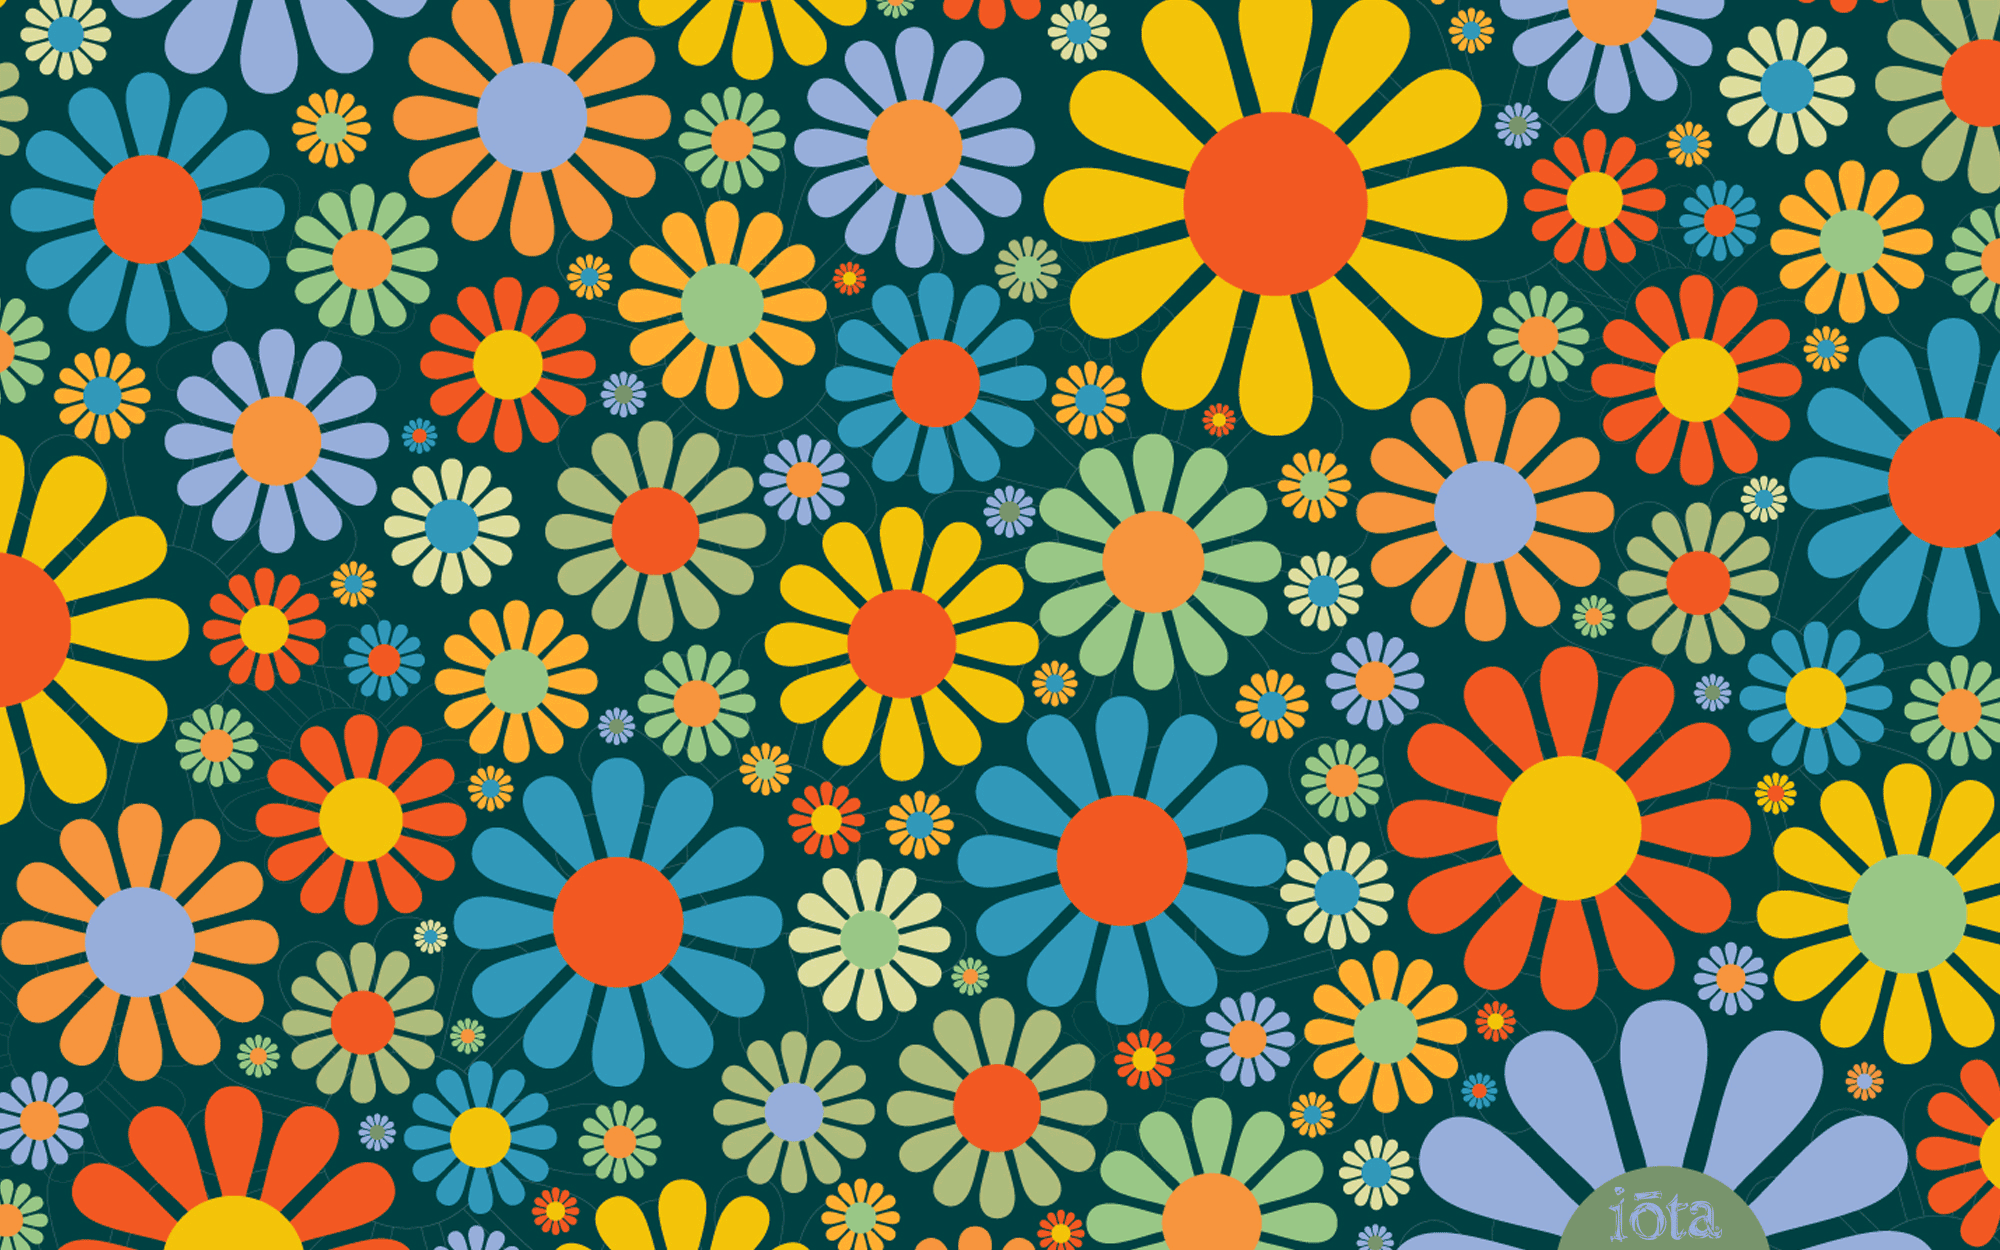 Hình nền hoa thập niên 70 sẽ mang đến cho bạn sự thuần khiết và tươi trẻ với những cánh hoa rực rỡ. Chúng sẽ đem lại một màu sắc hoàn toàn mới cho desktop của bạn.